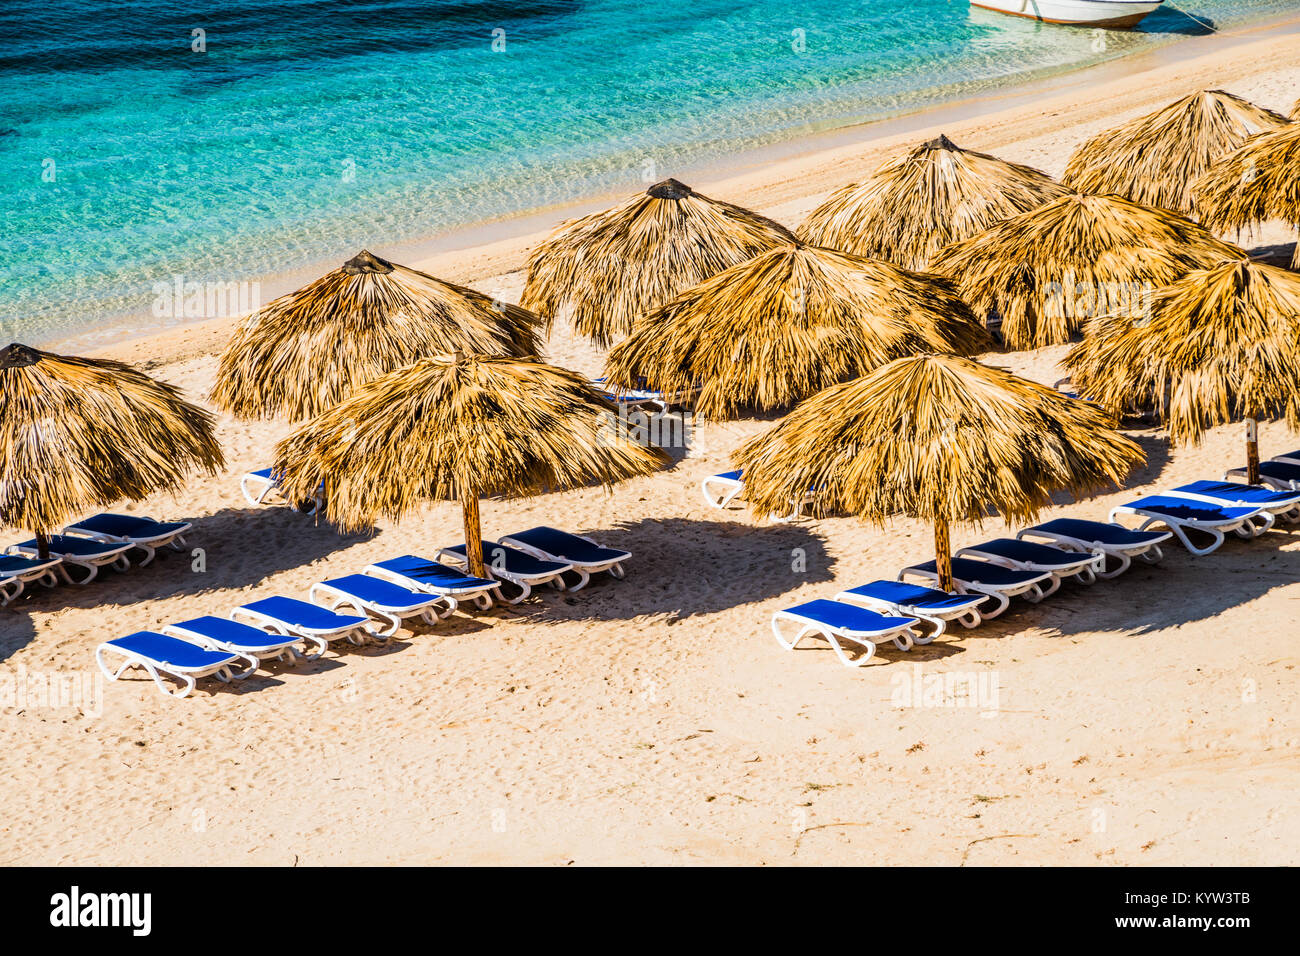 Tolle Aussicht von einem paradiesischen Strand in Playa Ancon, Palmen, durchscheinenden blauen Wasser, Stroh Sonnenschirmen. Stockfoto